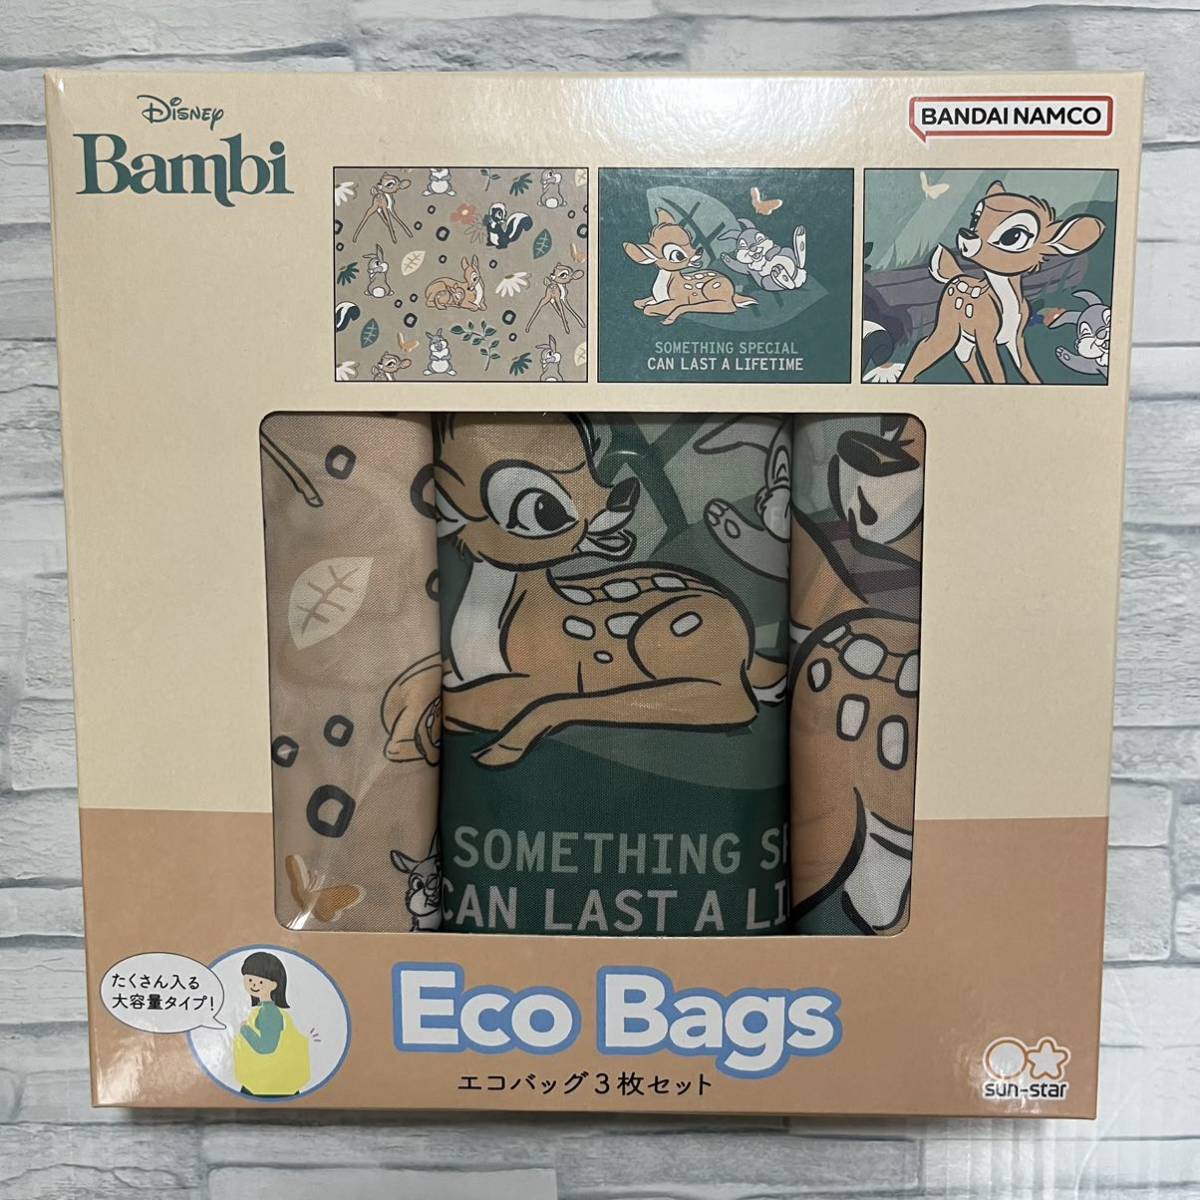 [ распродажа ] Disney Bambi эко-сумка 3 шт. комплект большая вместимость .... Sunstar канцелярские принадлежности герой эко-сумка 